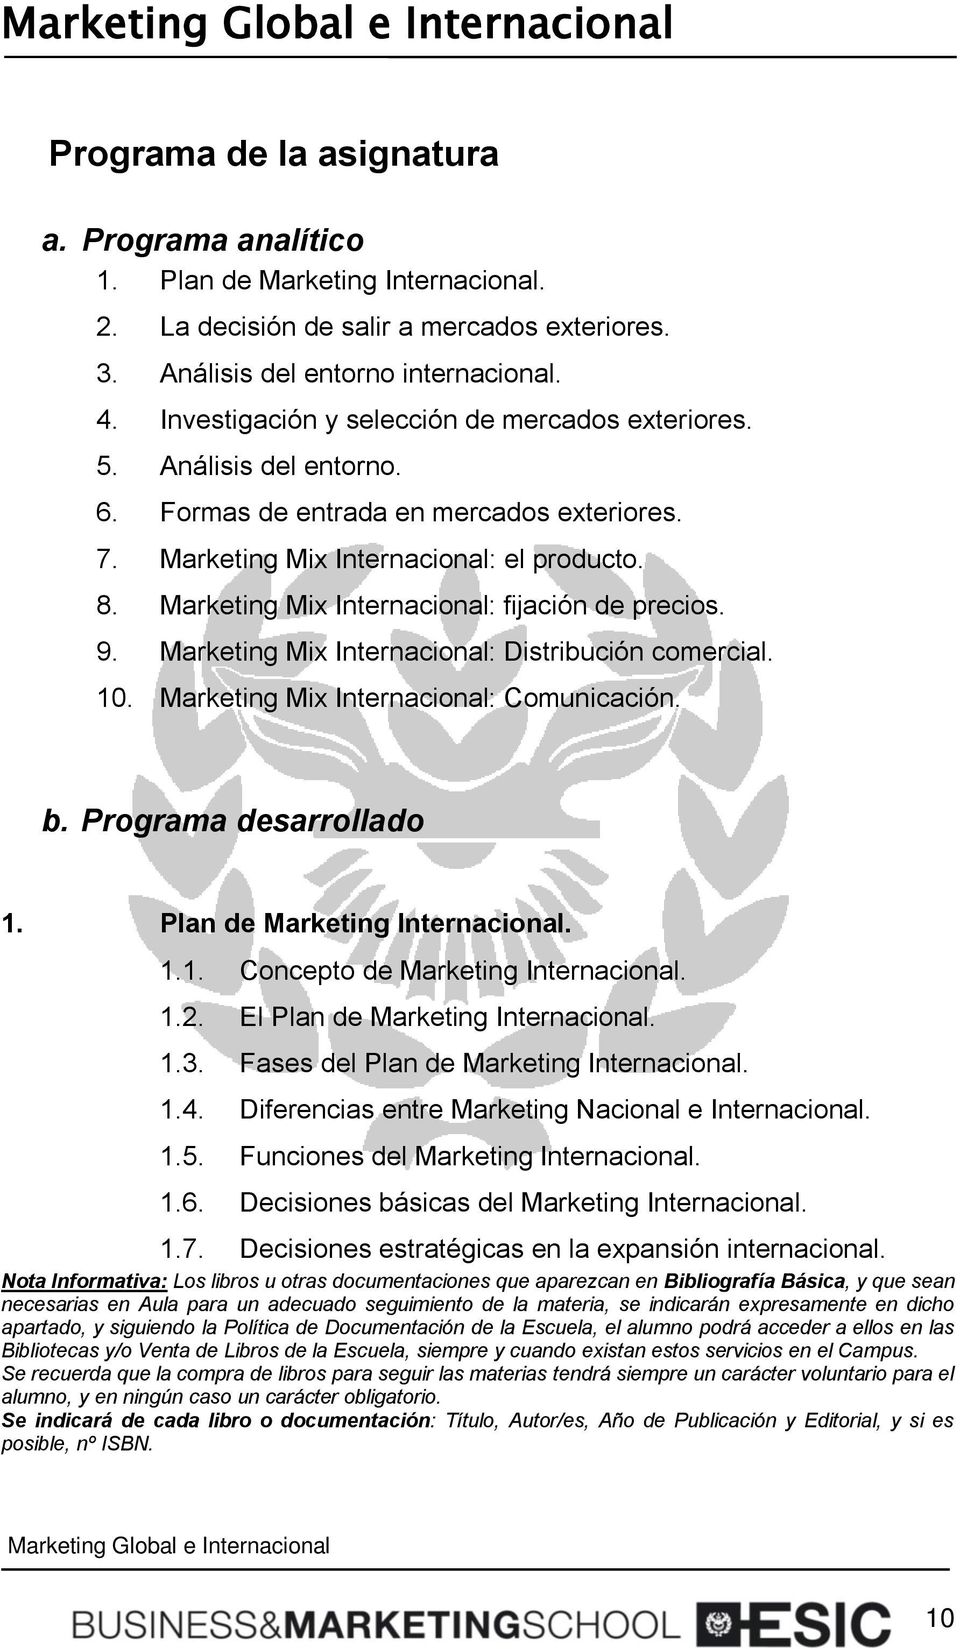 Marketing Mix Internacional: fijación de precios. 9. Marketing Mix Internacional: Distribución comercial. 10. Marketing Mix Internacional: Comunicación. b. Programa desarrollado 1.